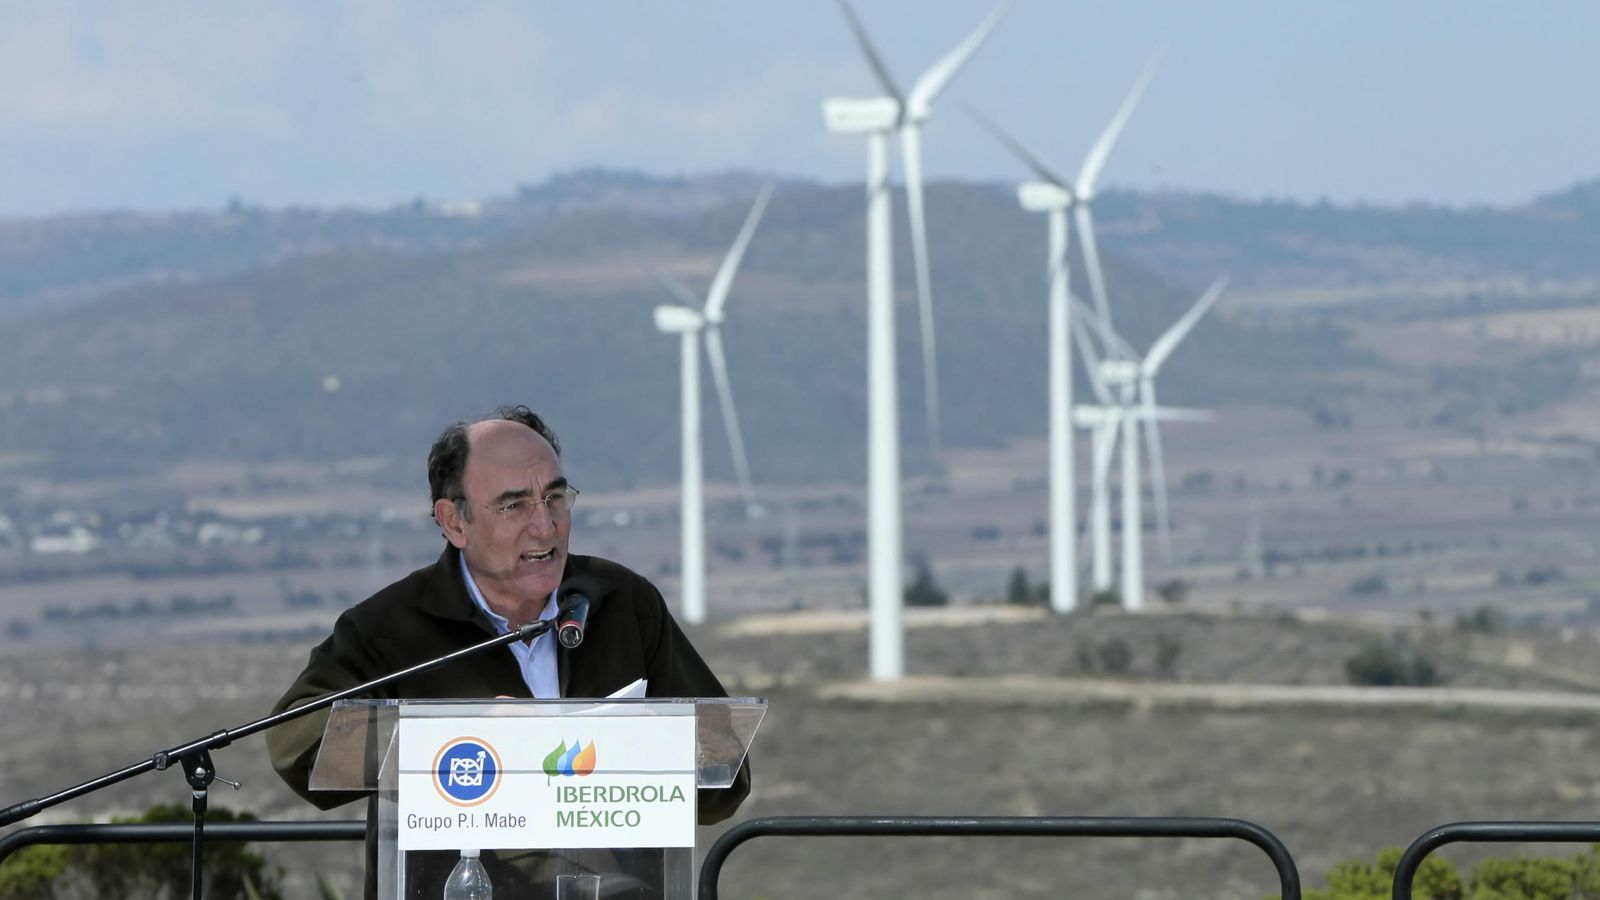 Foto: El presidente de Iberdrola, Ignacio Sánchez Galán, en la inauguración de un parque eólico en México. (EFE)